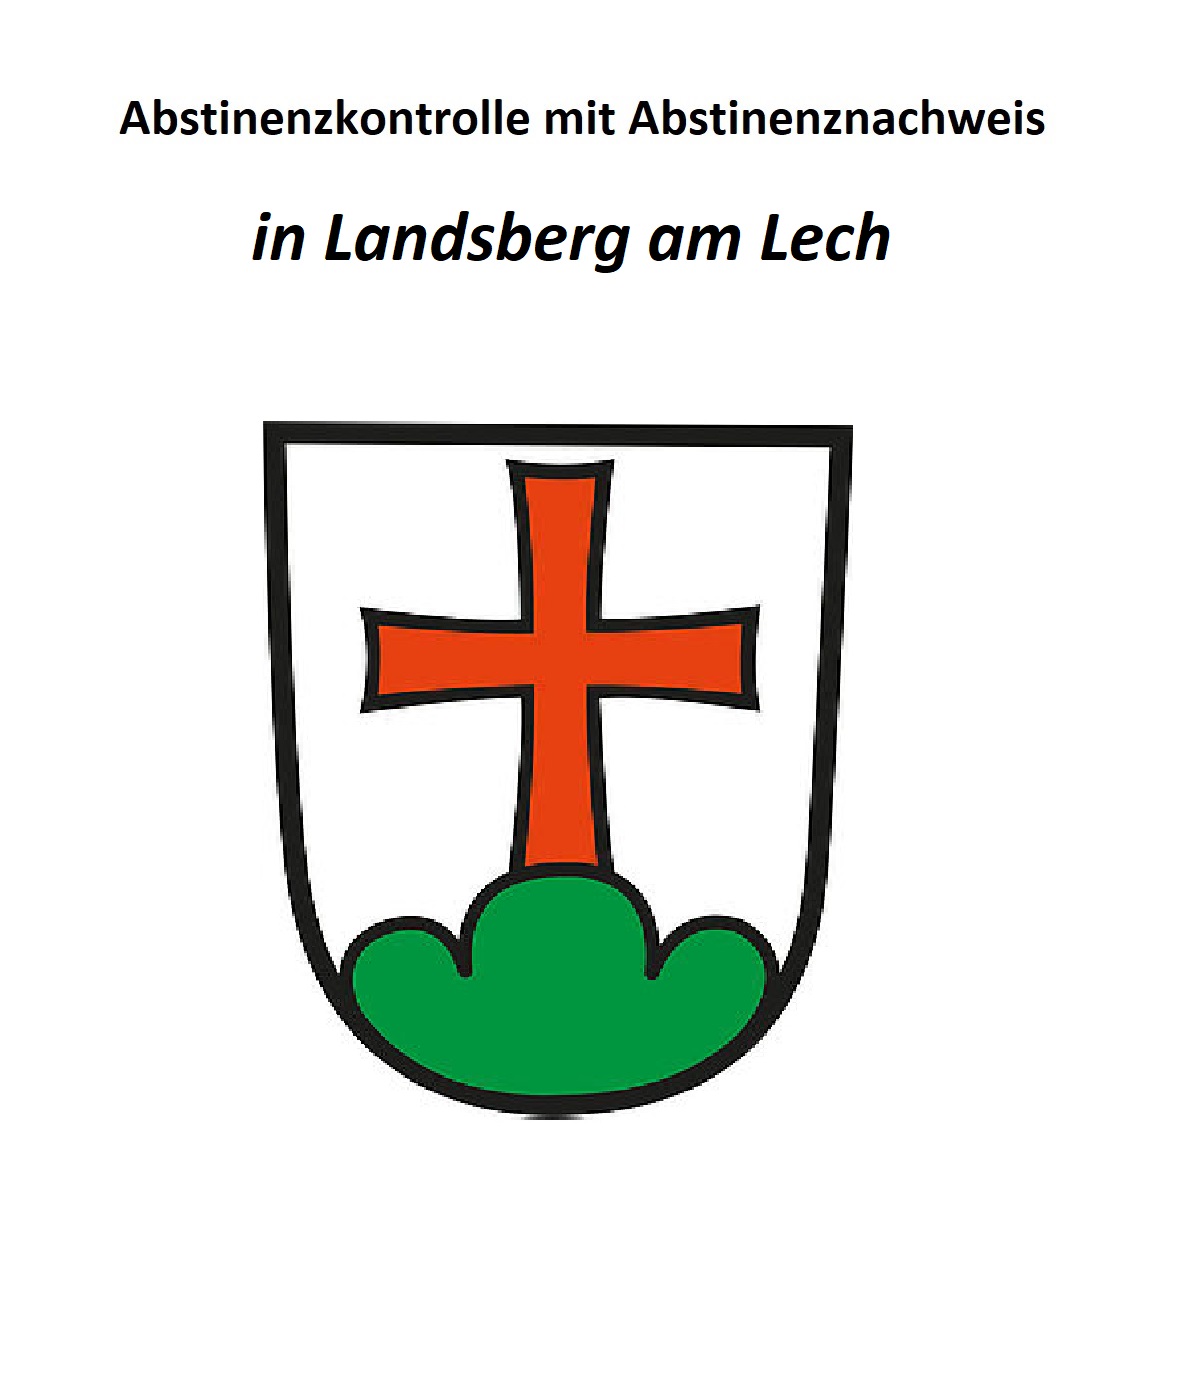 Standort Landsberg am Lech für Abstinenzkontrolle und Abstinenznachweis